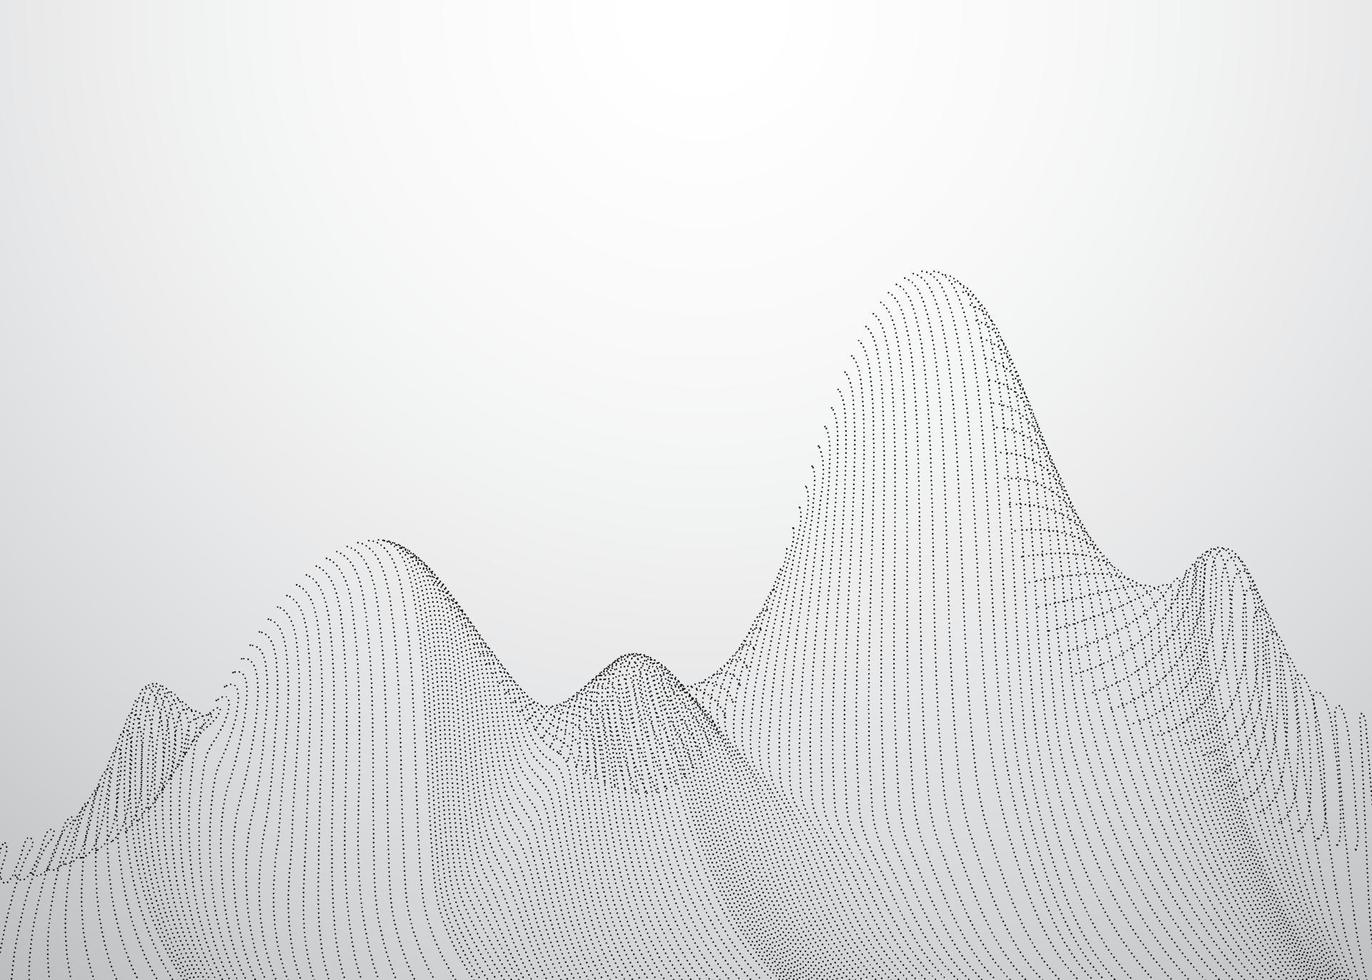 Dots mesh wave digital background. Vector Illustration